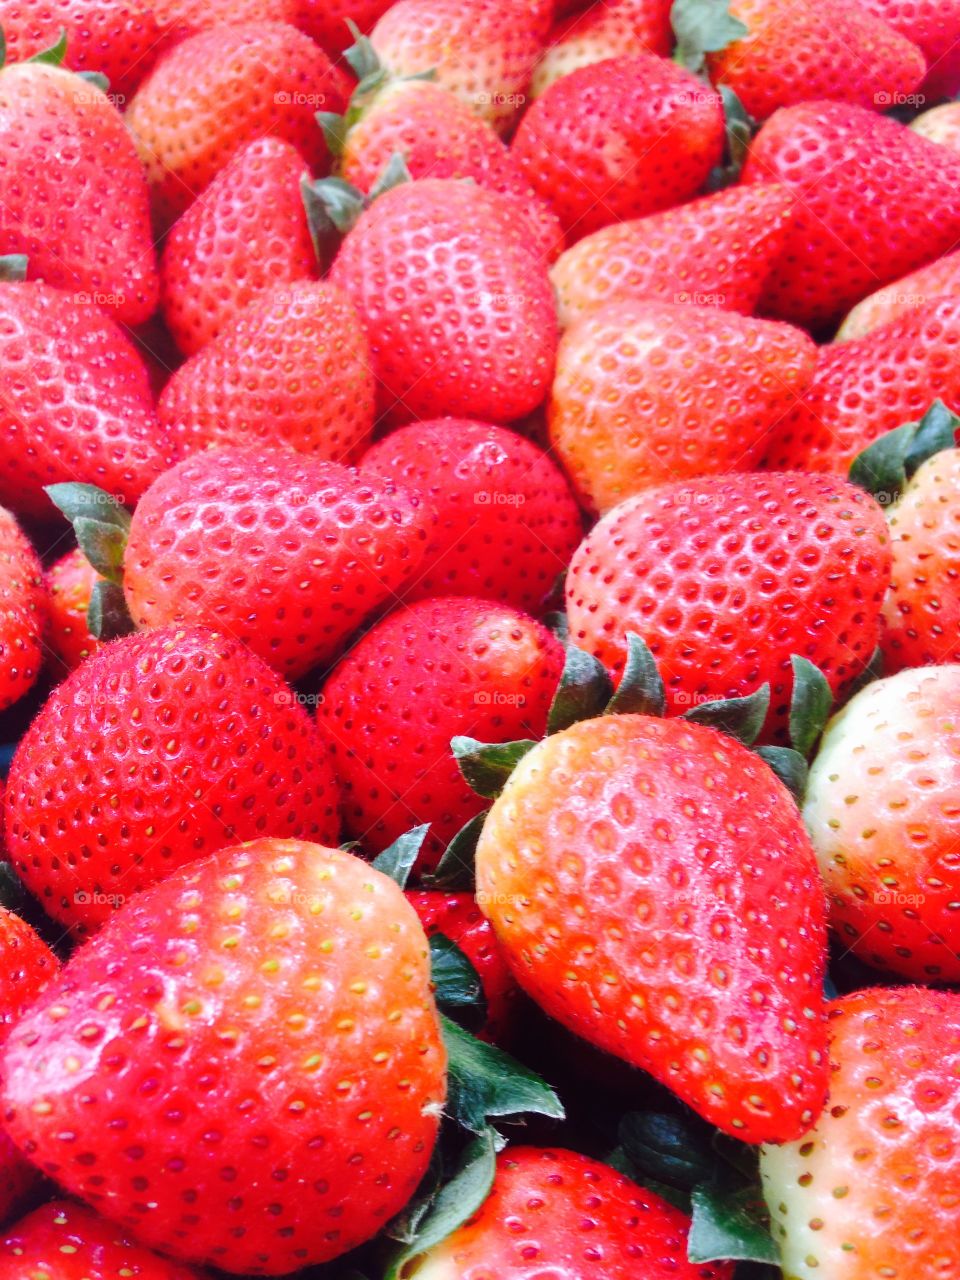 Strawberry Ichigo. Fresh red strawberries from Japan 